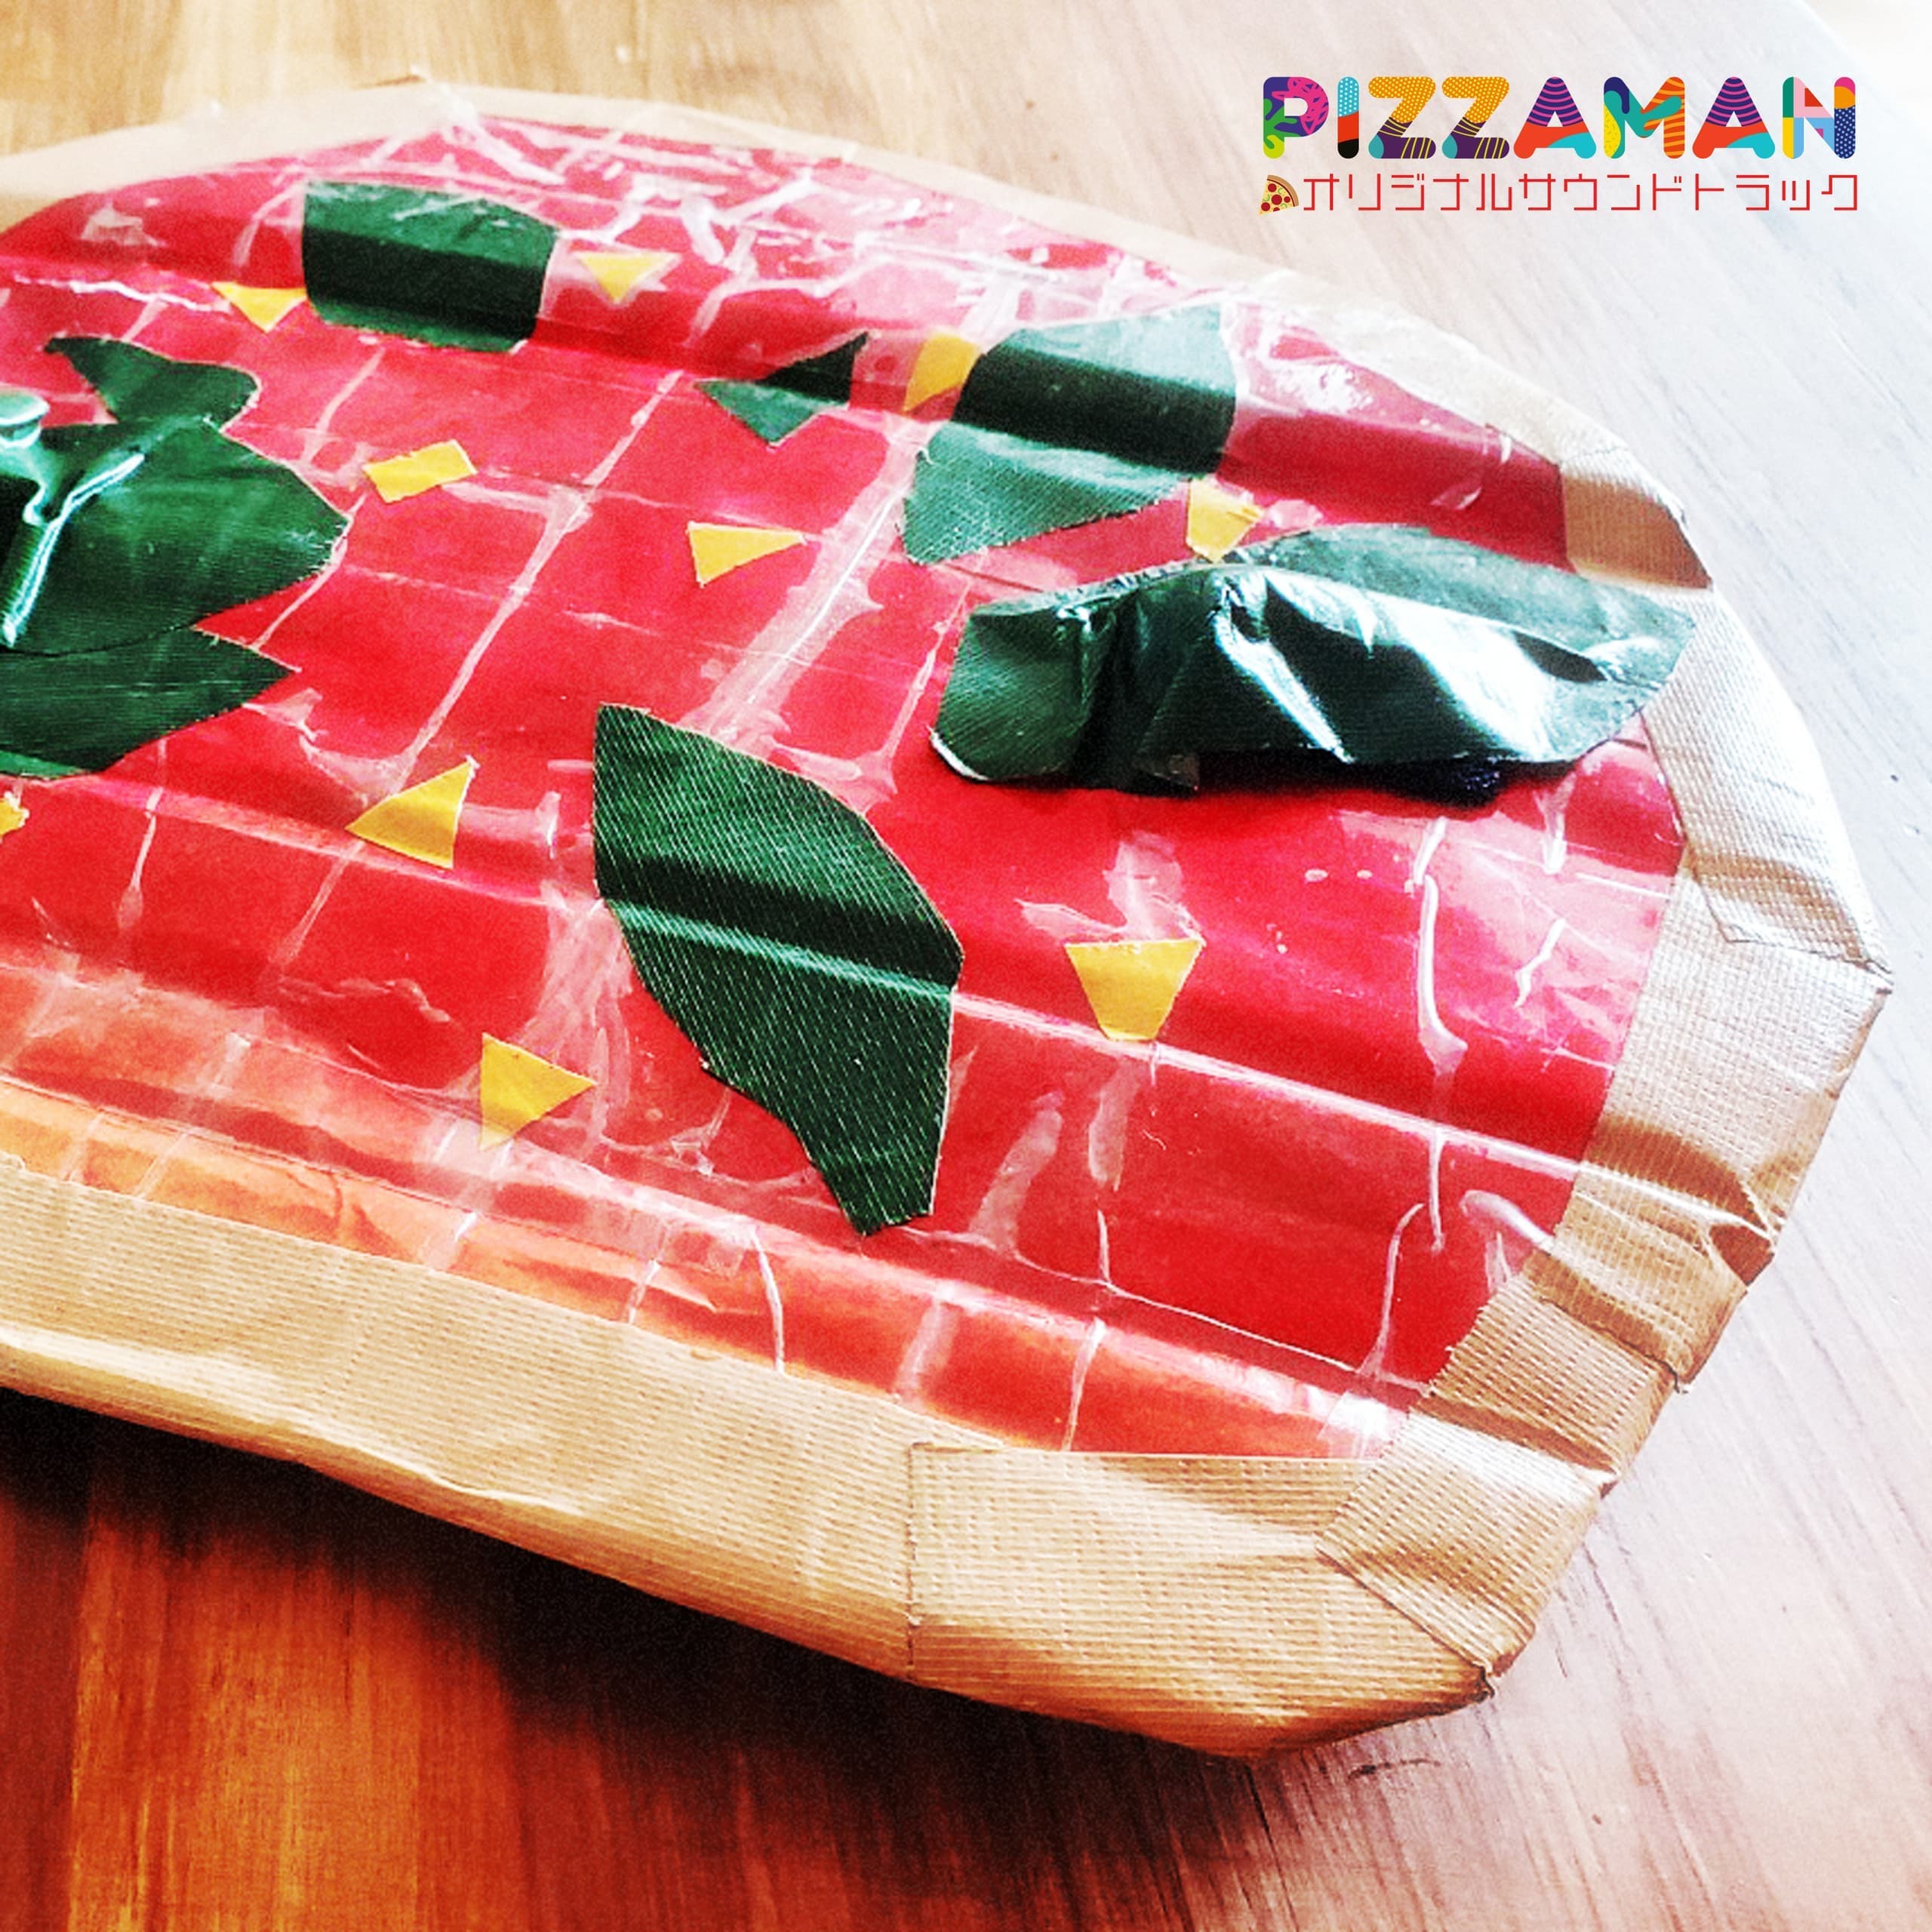 pizzaman_jacket02.jpg